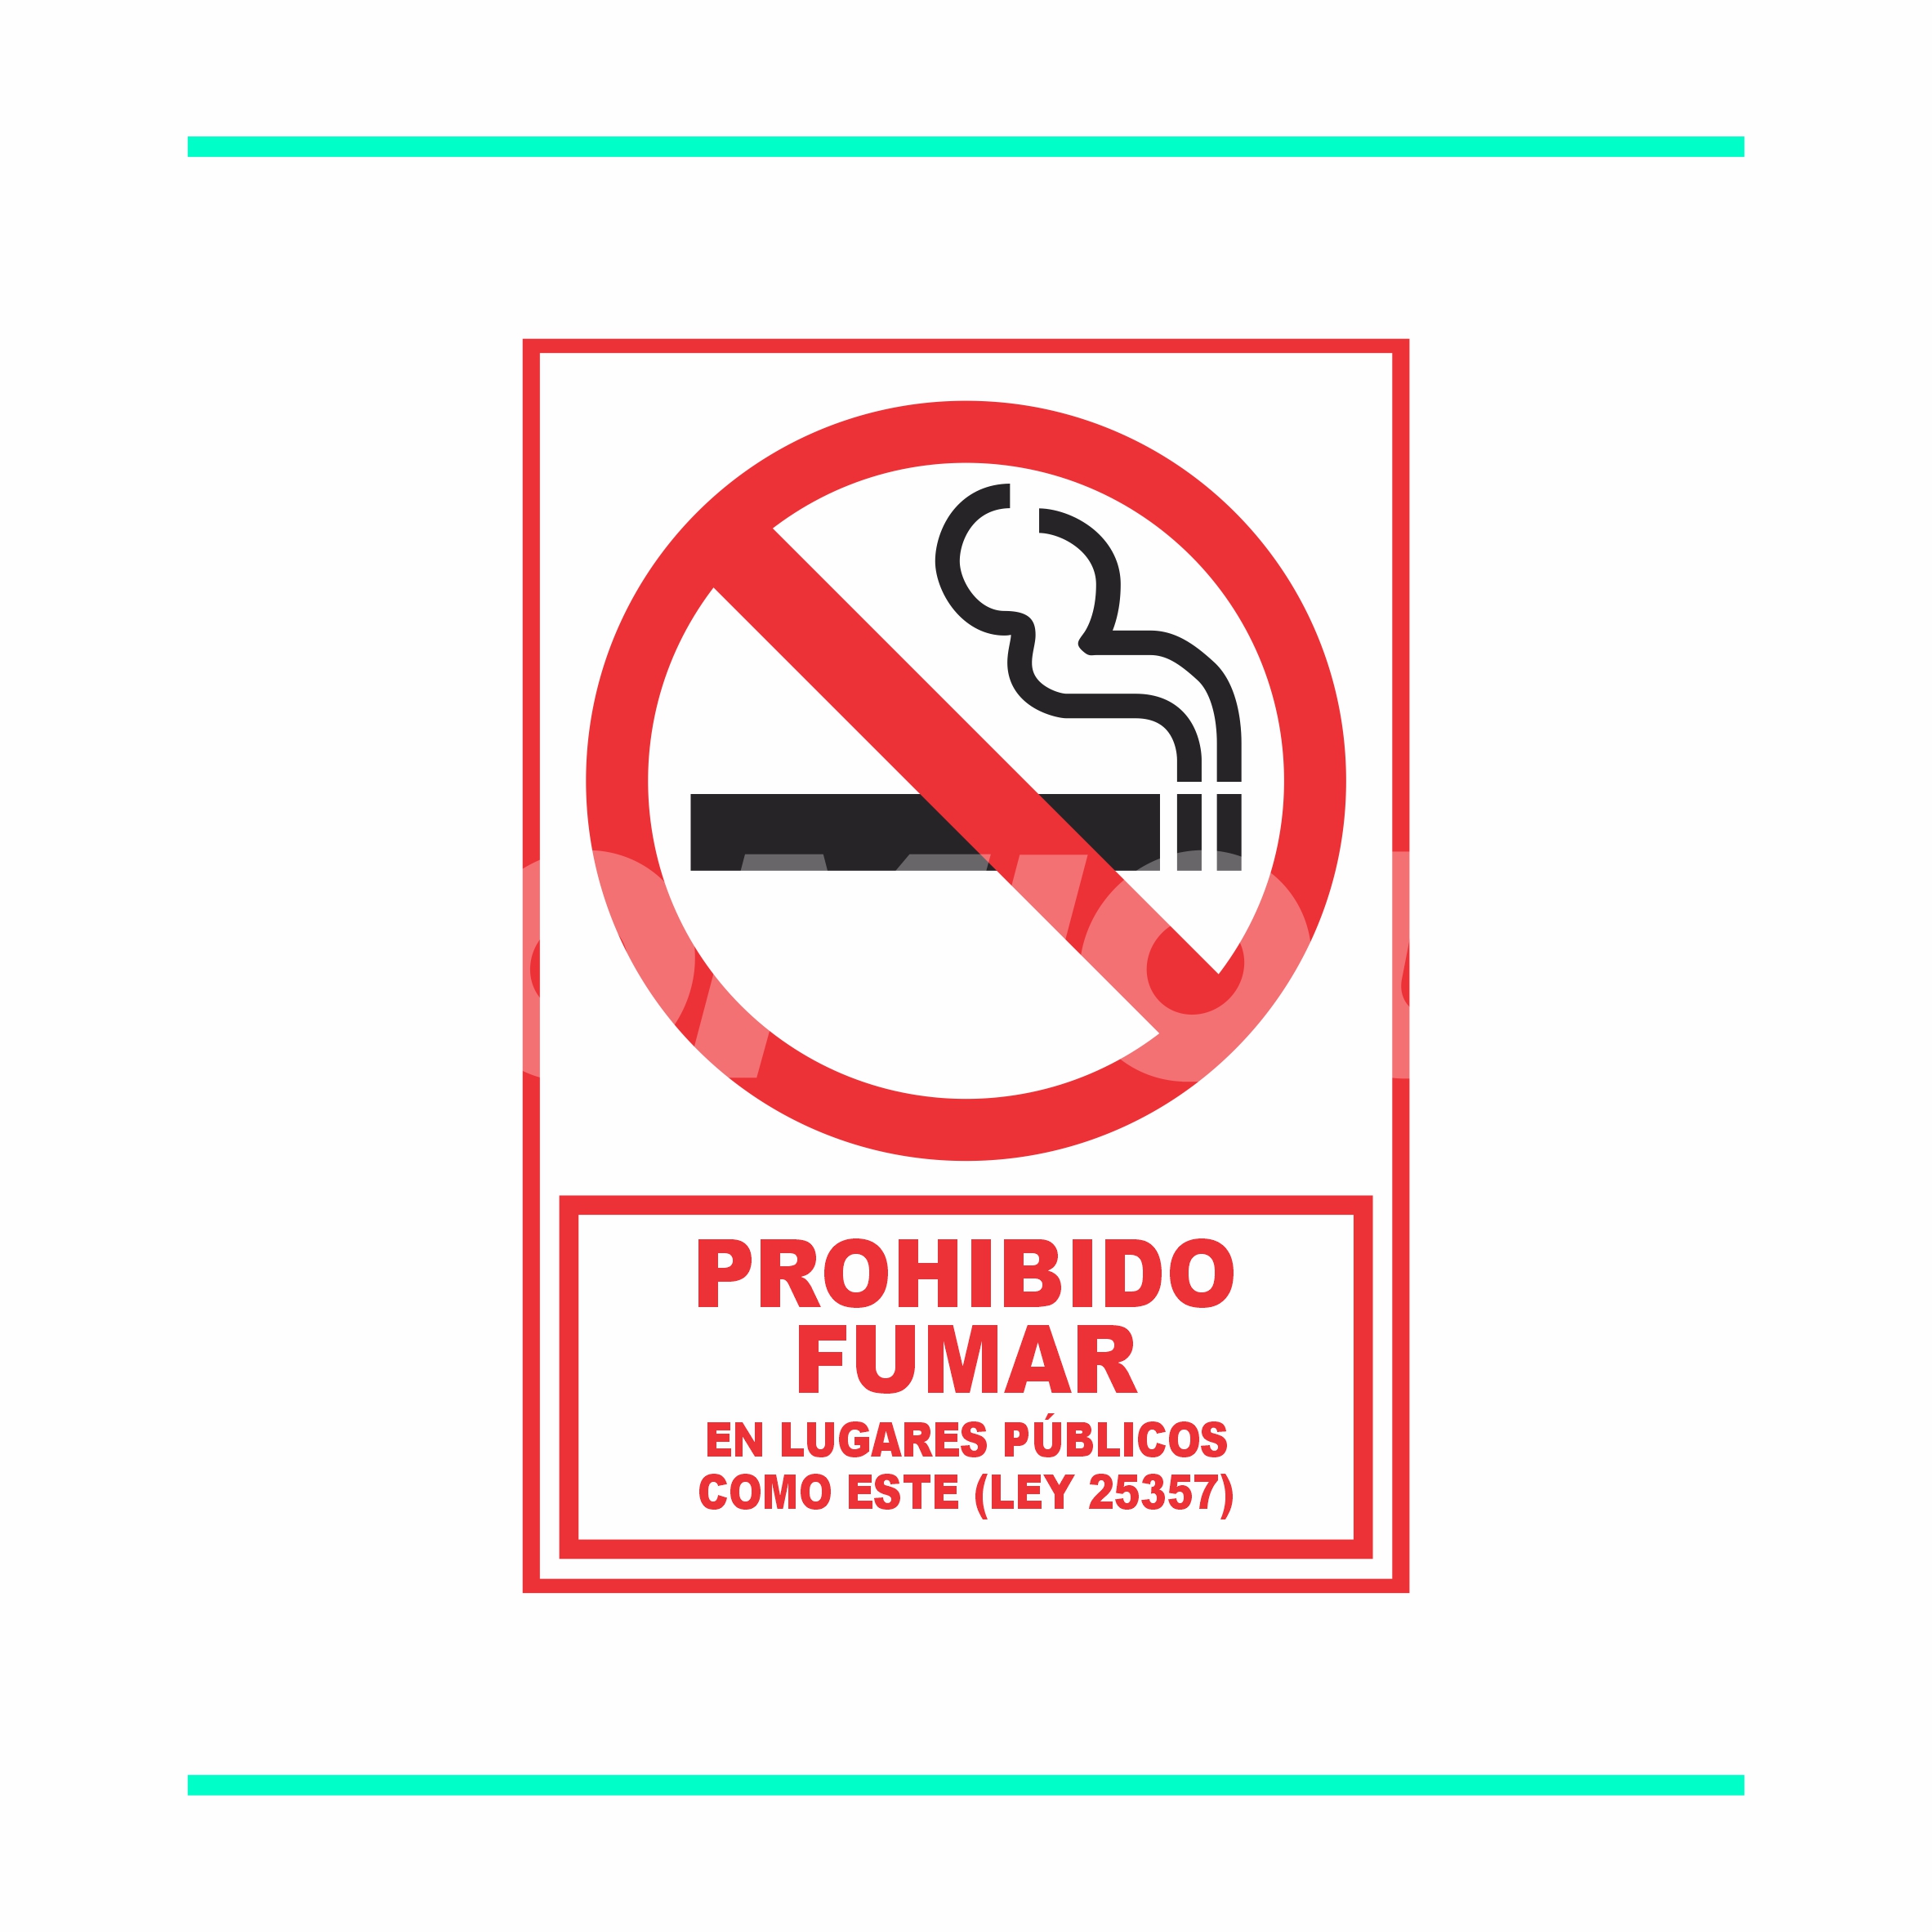 Descarga ☆ Gratis el cartel de Prohibido Fumar para tu local